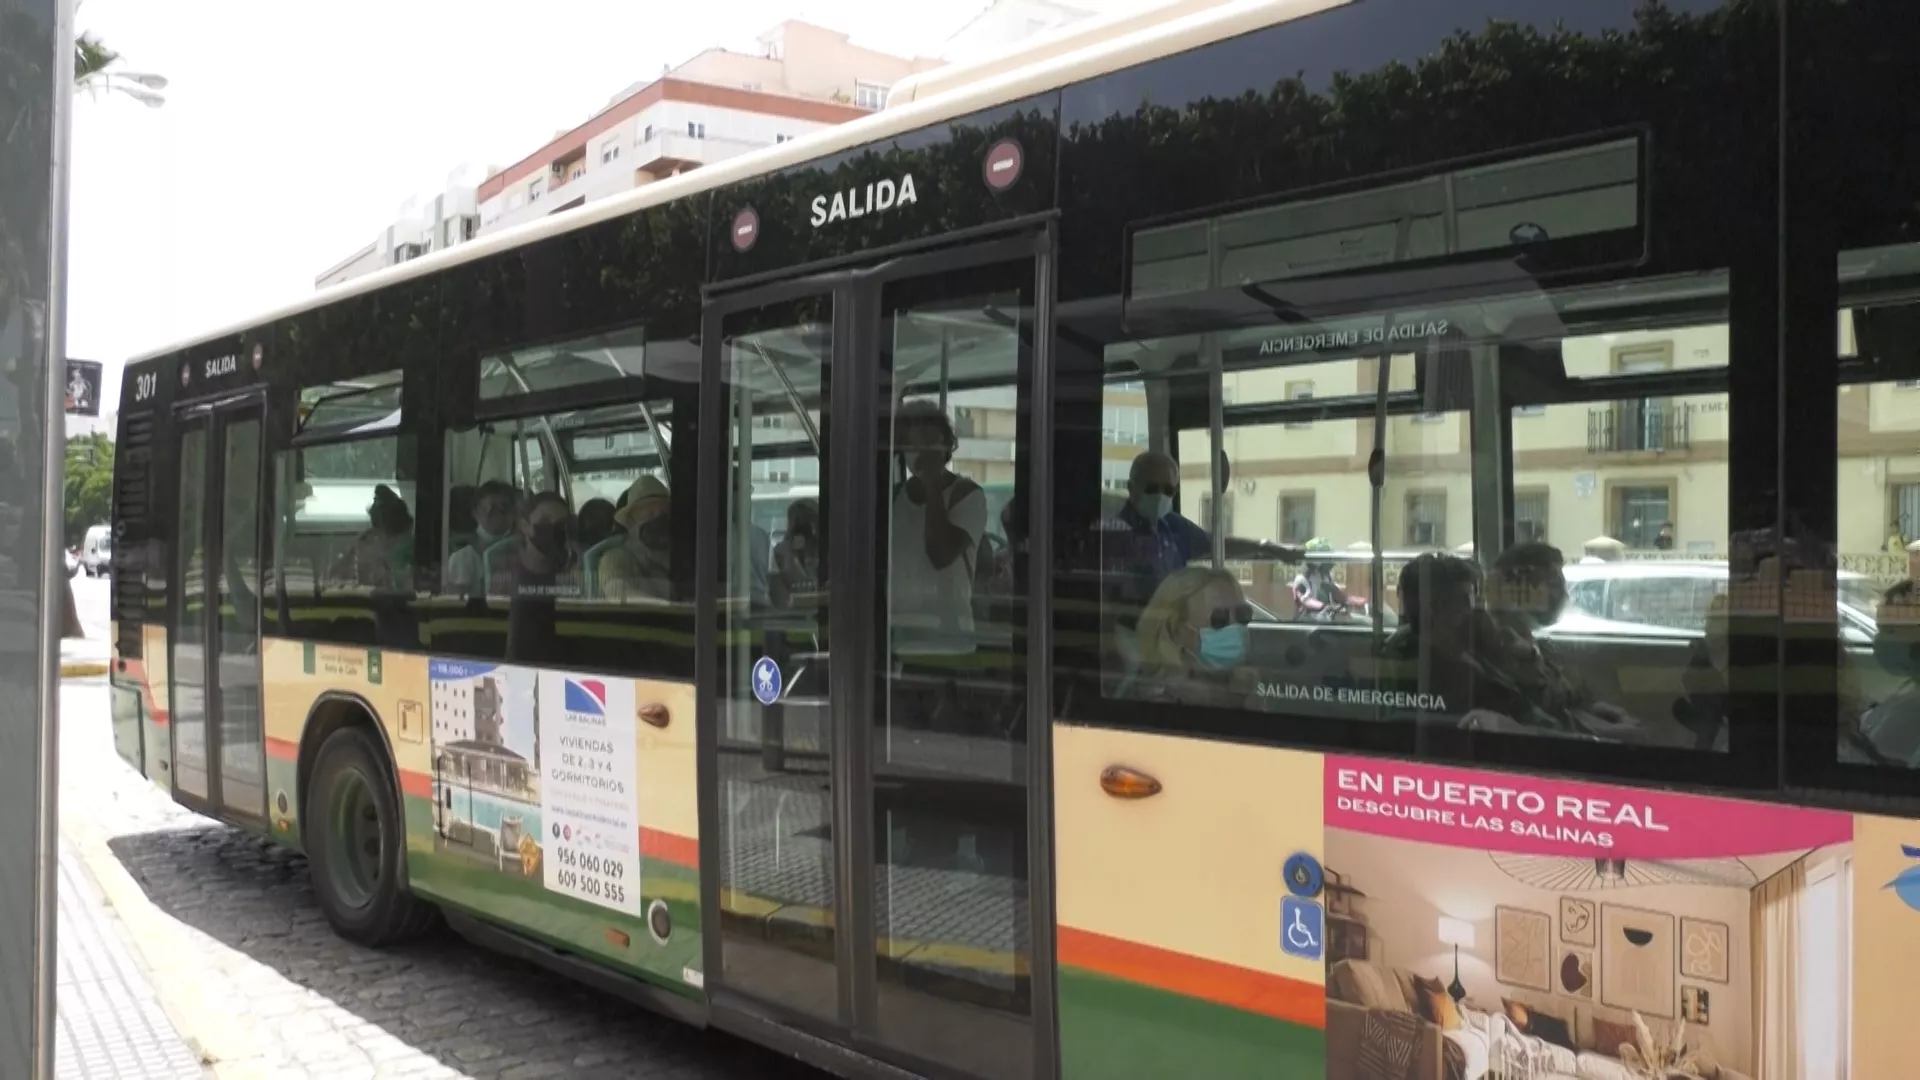 La flota de autobuses urbanos renovada en cuatro años 